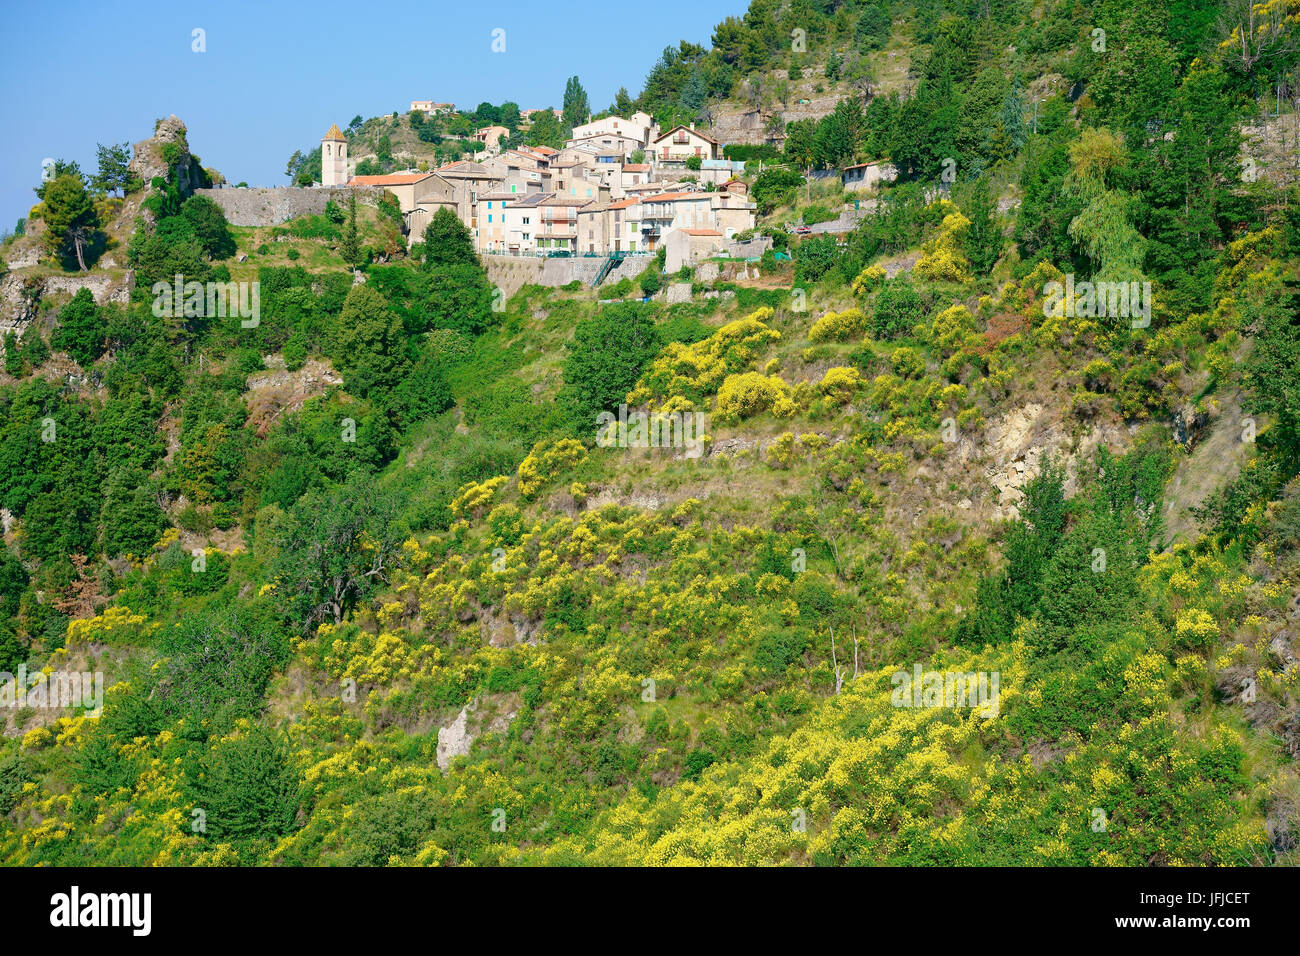 Frühling mit blühenden Besen in der Nähe eines mittelalterlichen Dorfes auf einem Hügel. Toudon, das Hinterland der französischen Riviera, Alpes-Maritimes, Frankreich. Stockfoto